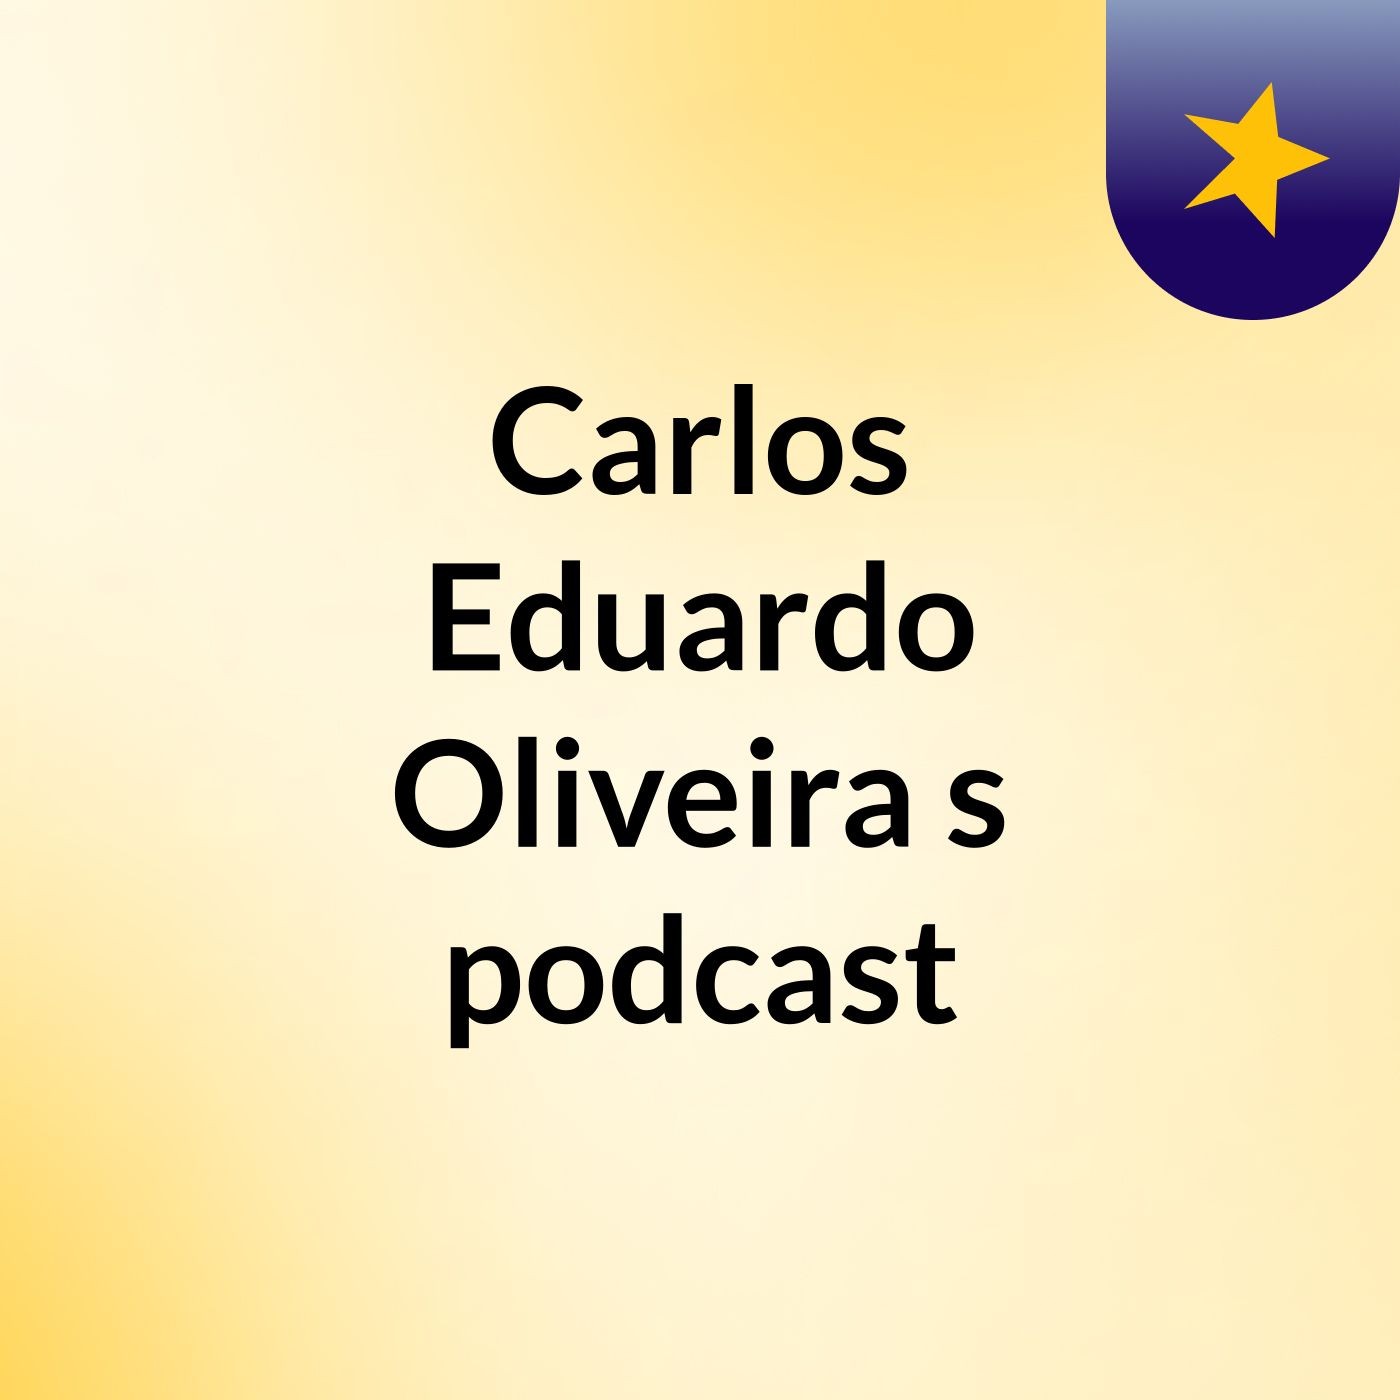 Carlos Eduardo Oliveira's podcast